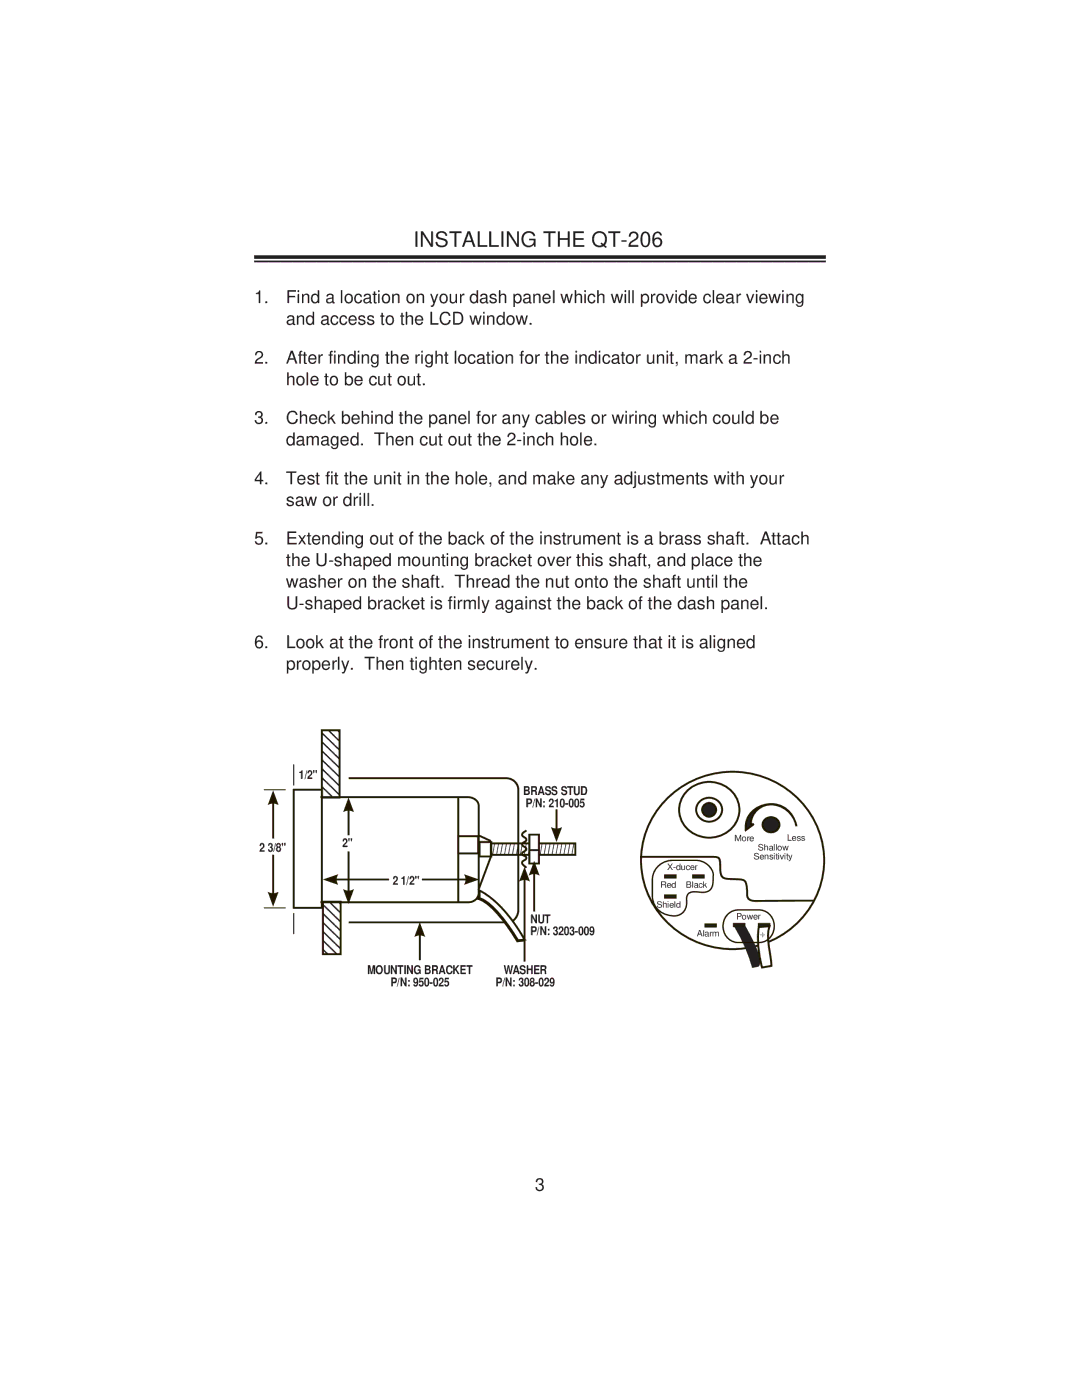 Uniden Clock manual Installing the QT-206 